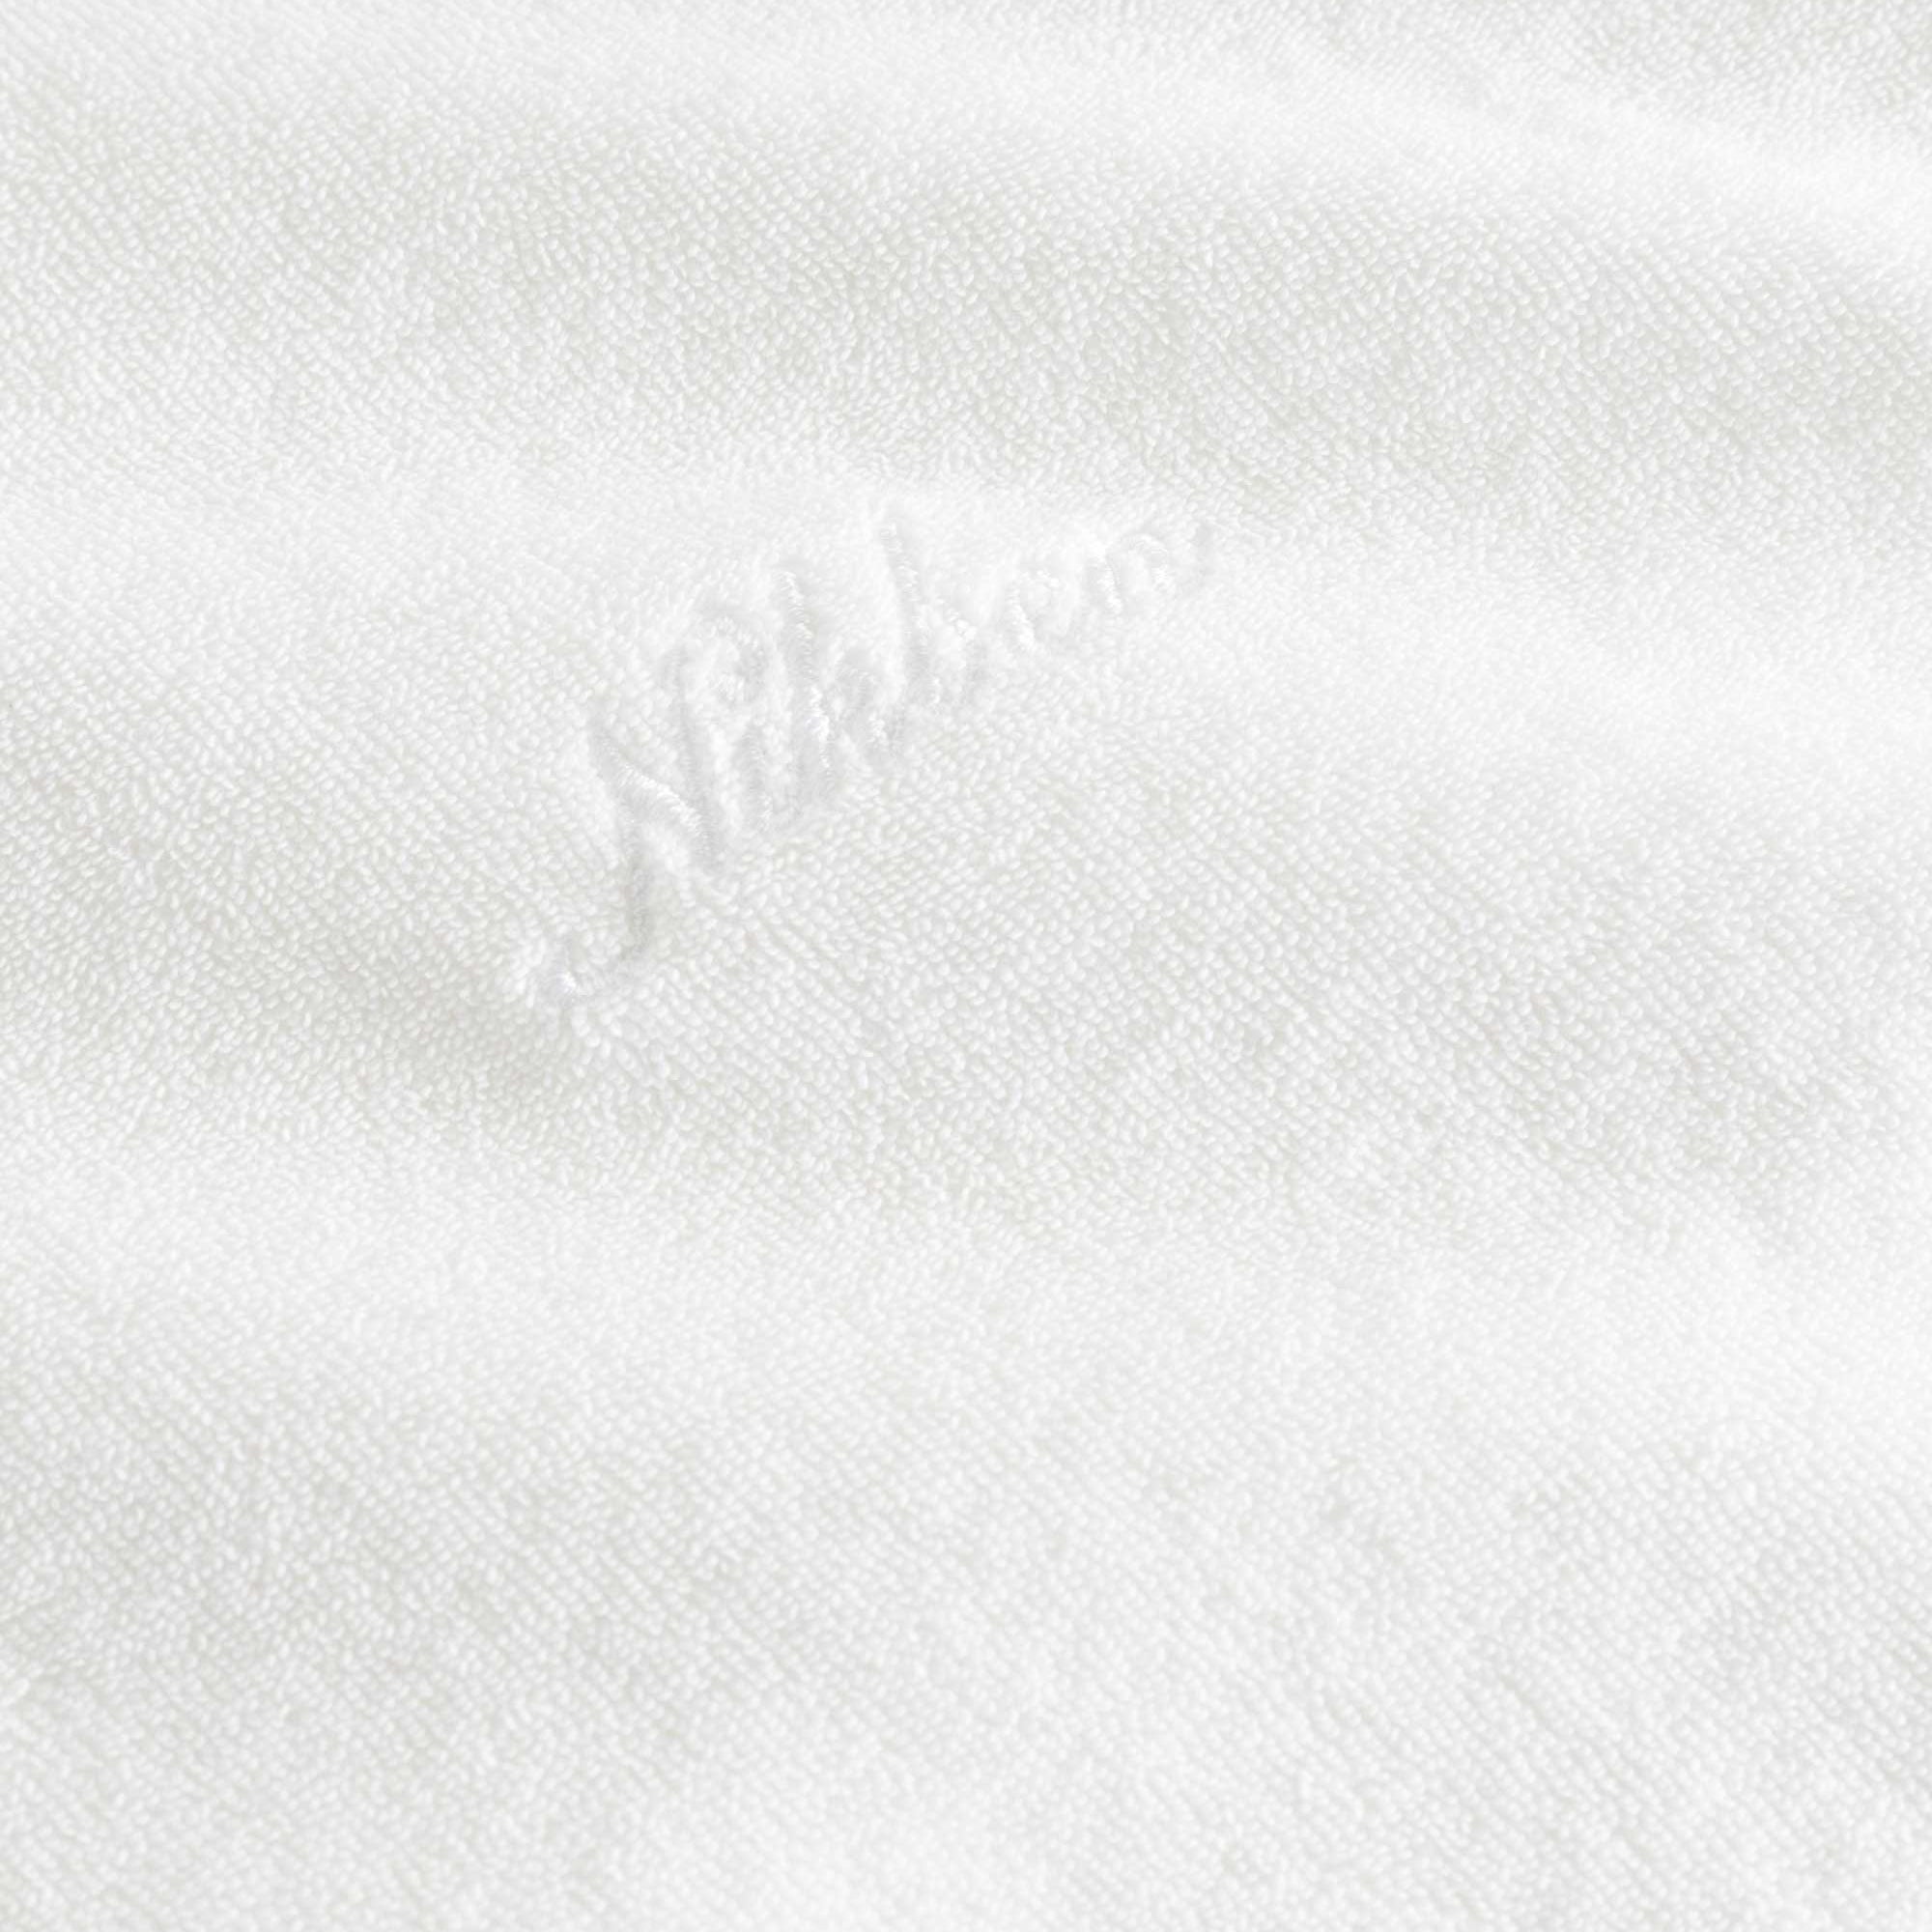 White "nikben" logo on a white hoodie